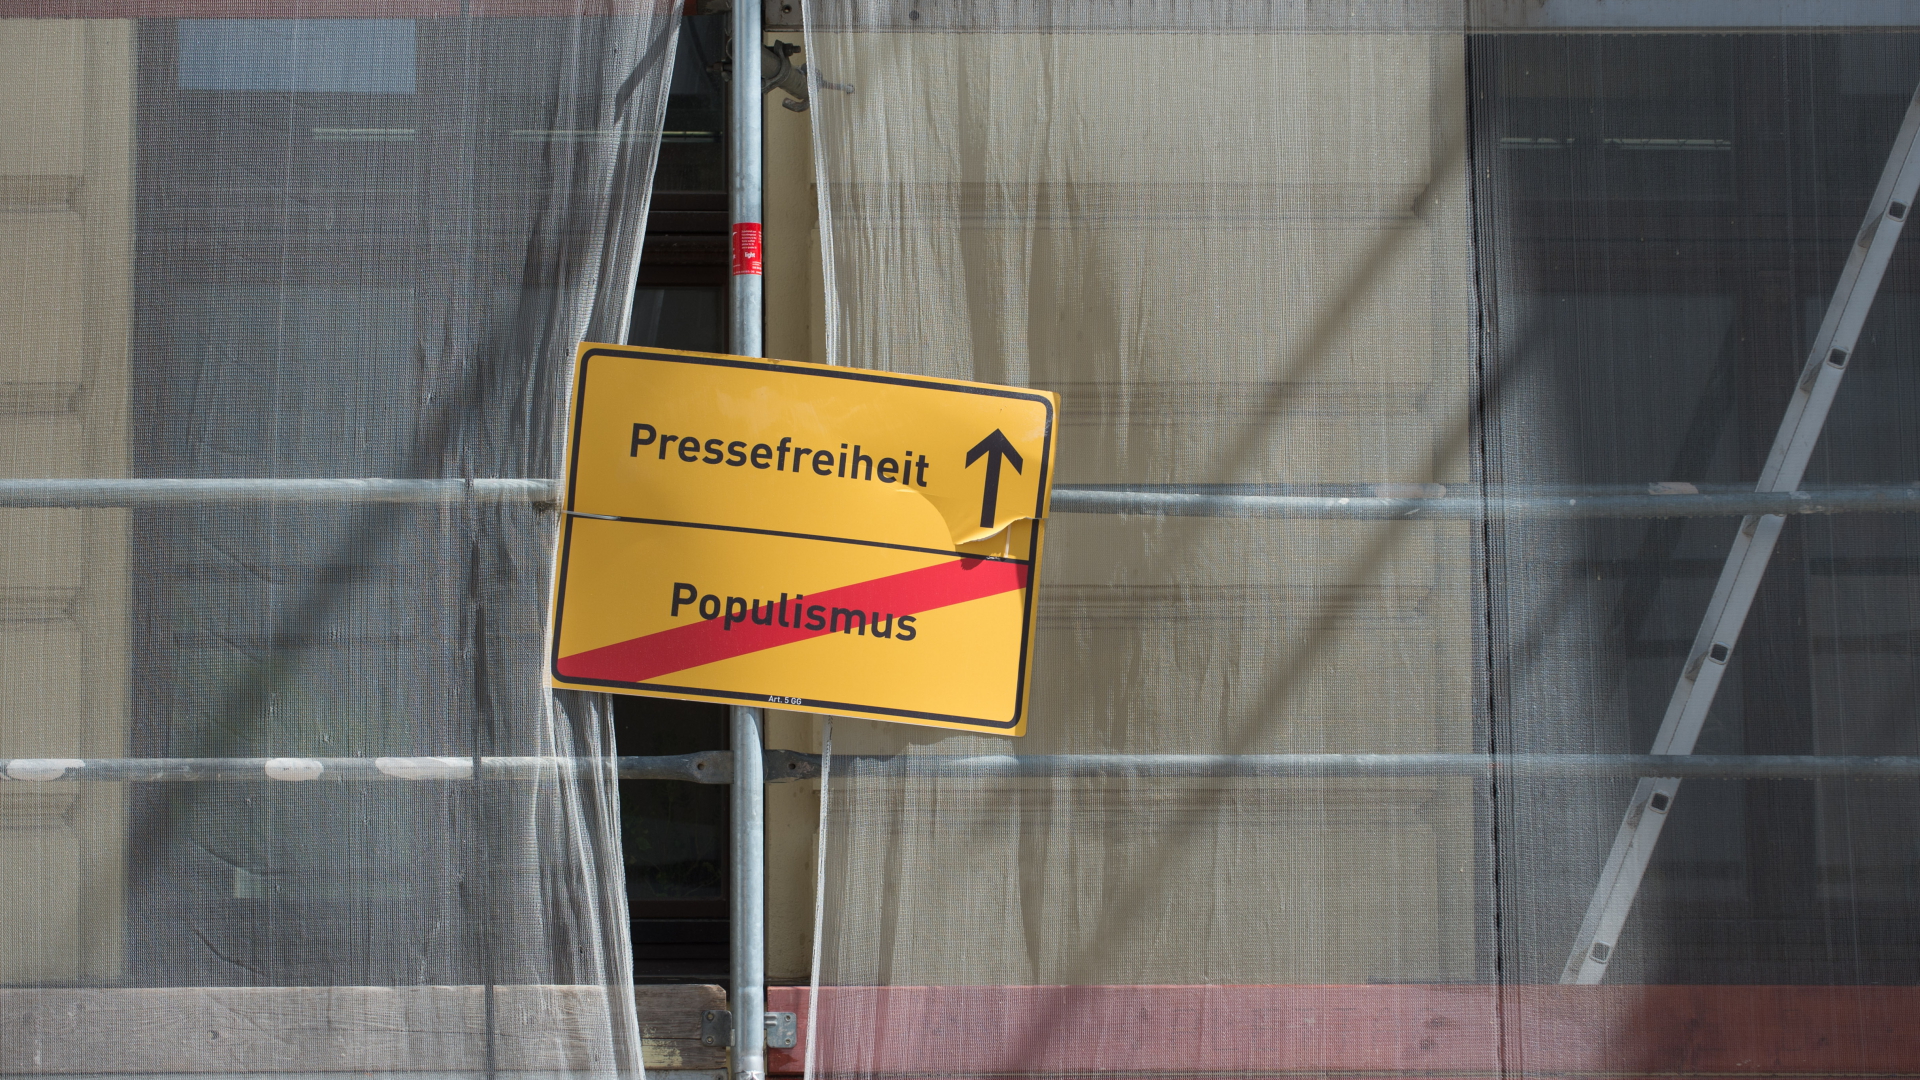 Die Worte "Pressefreiheit" und "Populismus" stehen auf einem Schild, das an einem Baugerüst angebracht ist.  | dpa